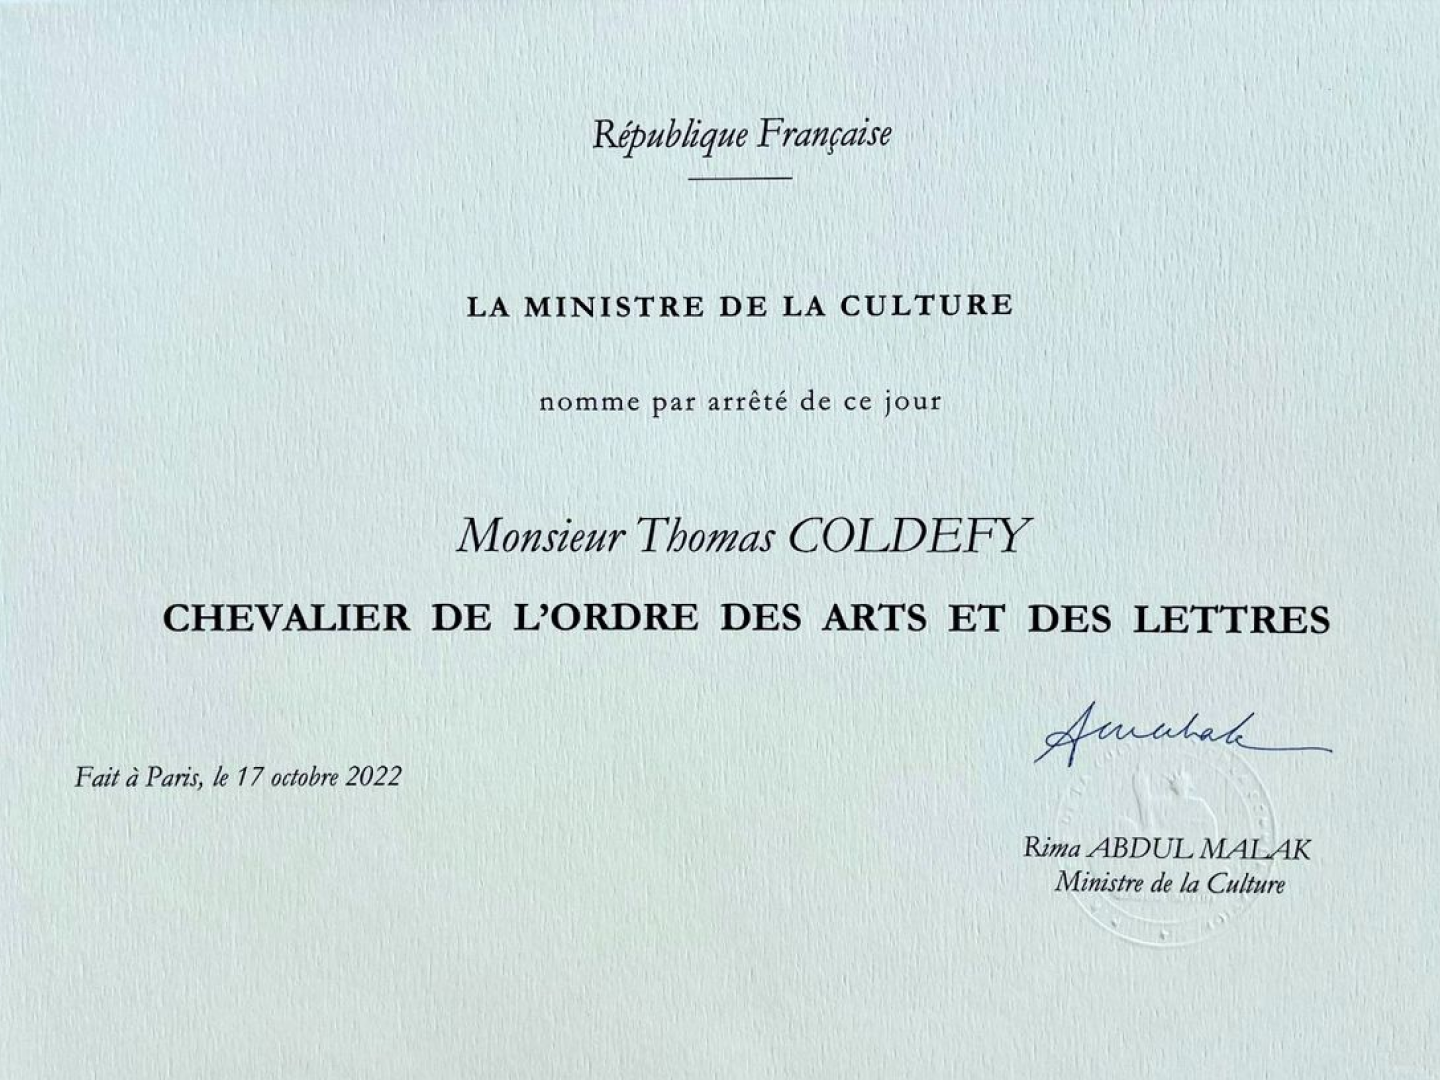 Thomas Coldefy awarded